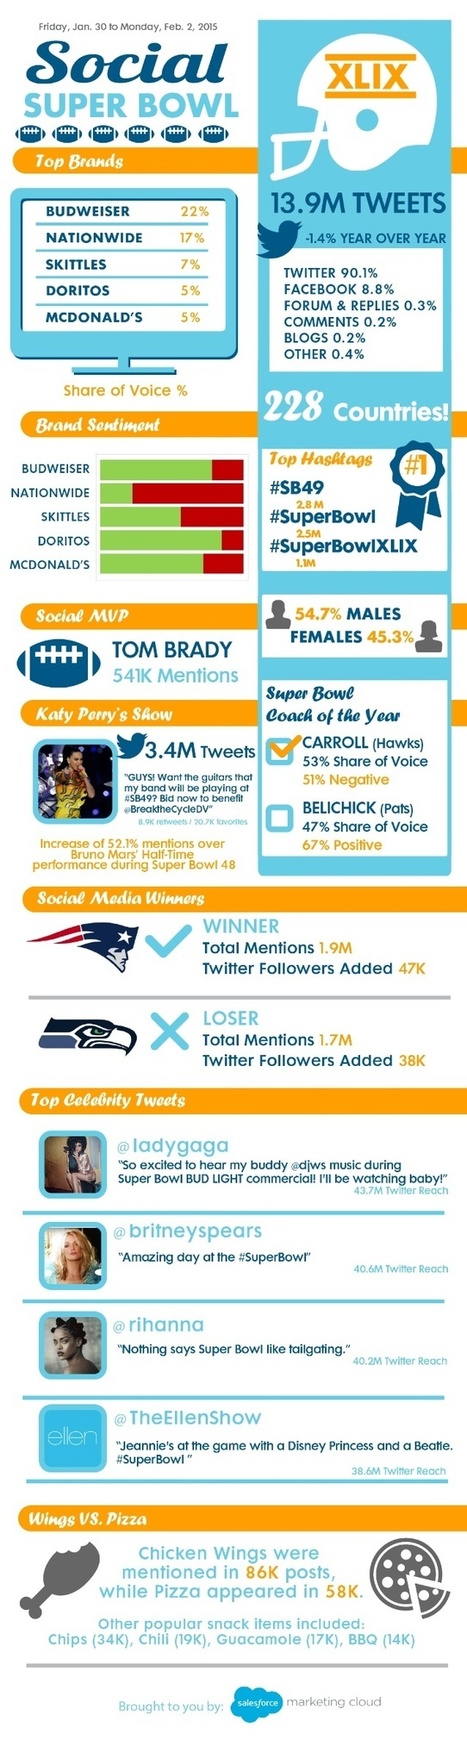 Super Bowl 2015 en Redes Sociales #infografia #infographic #socialmedia | Seo, Social Media Marketing | Scoop.it